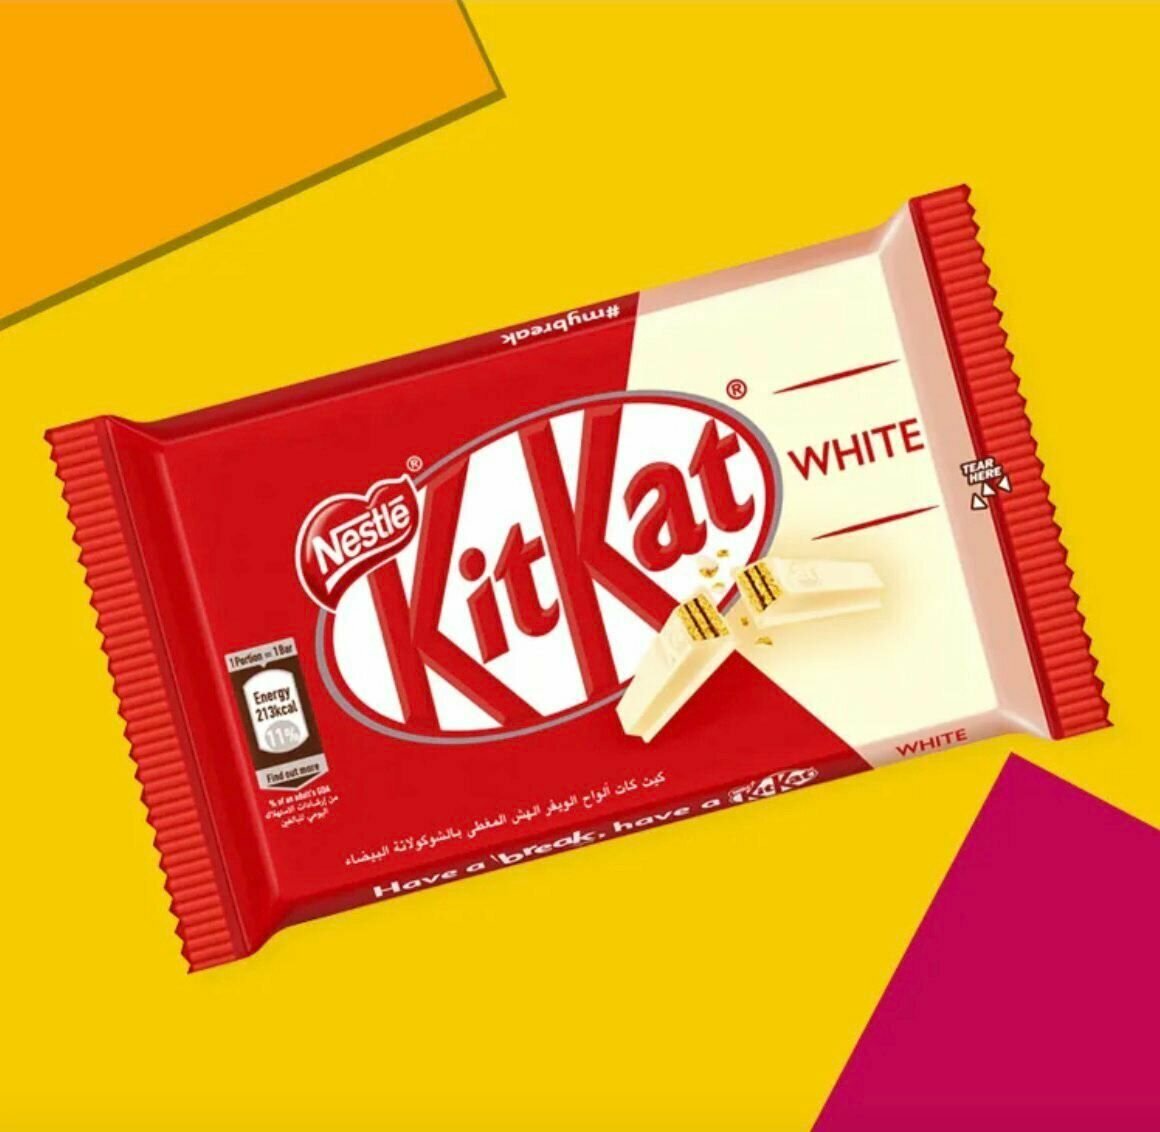 Шоколадный батончик KitKat 4 Fingers White/ Киткат шоколад 4 пальца белый 4 шт (Европа) - фотография № 4